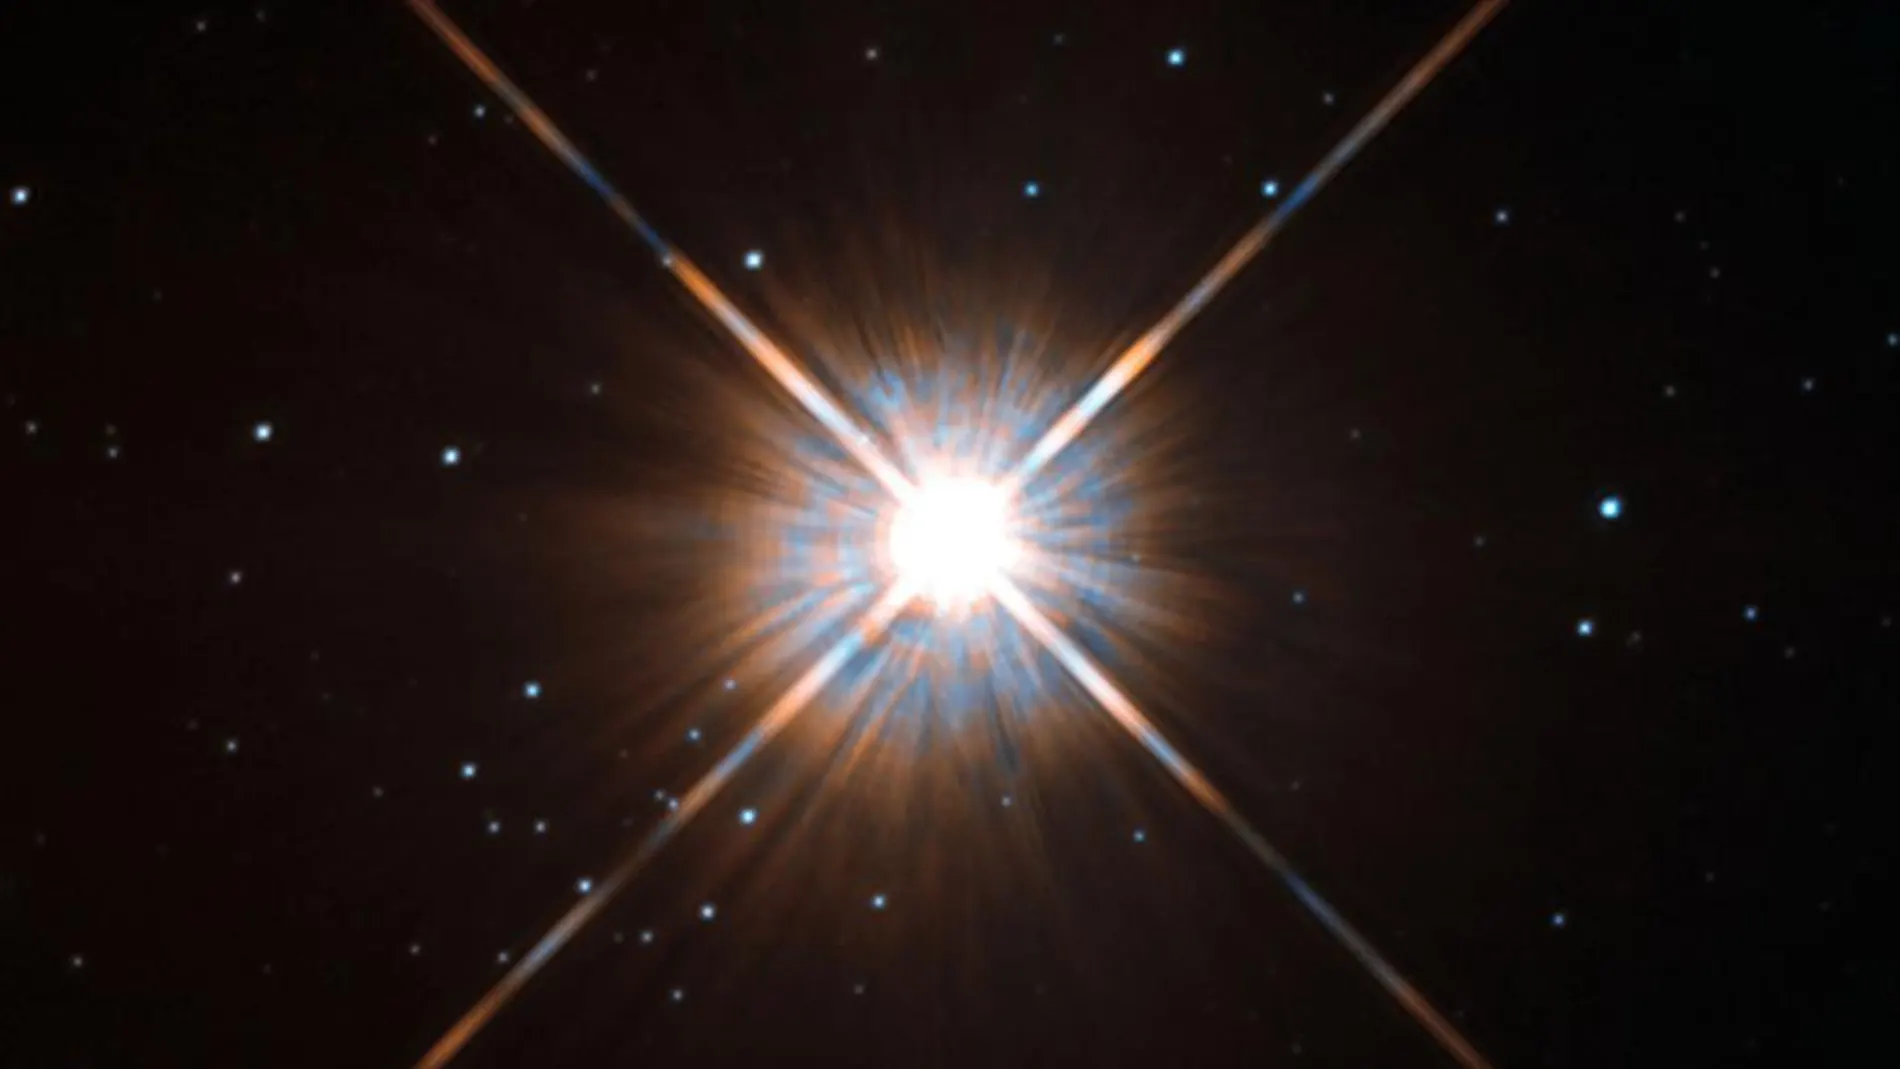 Fotografía cedida por el Observatorio Europeo Austral (ESO) de la estrella «Próxima Centauri», tomada por el Telescopio la Silla del Observatorio Europeo Austral (ESO). Astrónomos internacionales empezaron en Chile lo que consideraron una «cacería de planetas» similares a la Tierra, enfocados en la estrella cercana al Sistema Solar «Próxima Centauri».